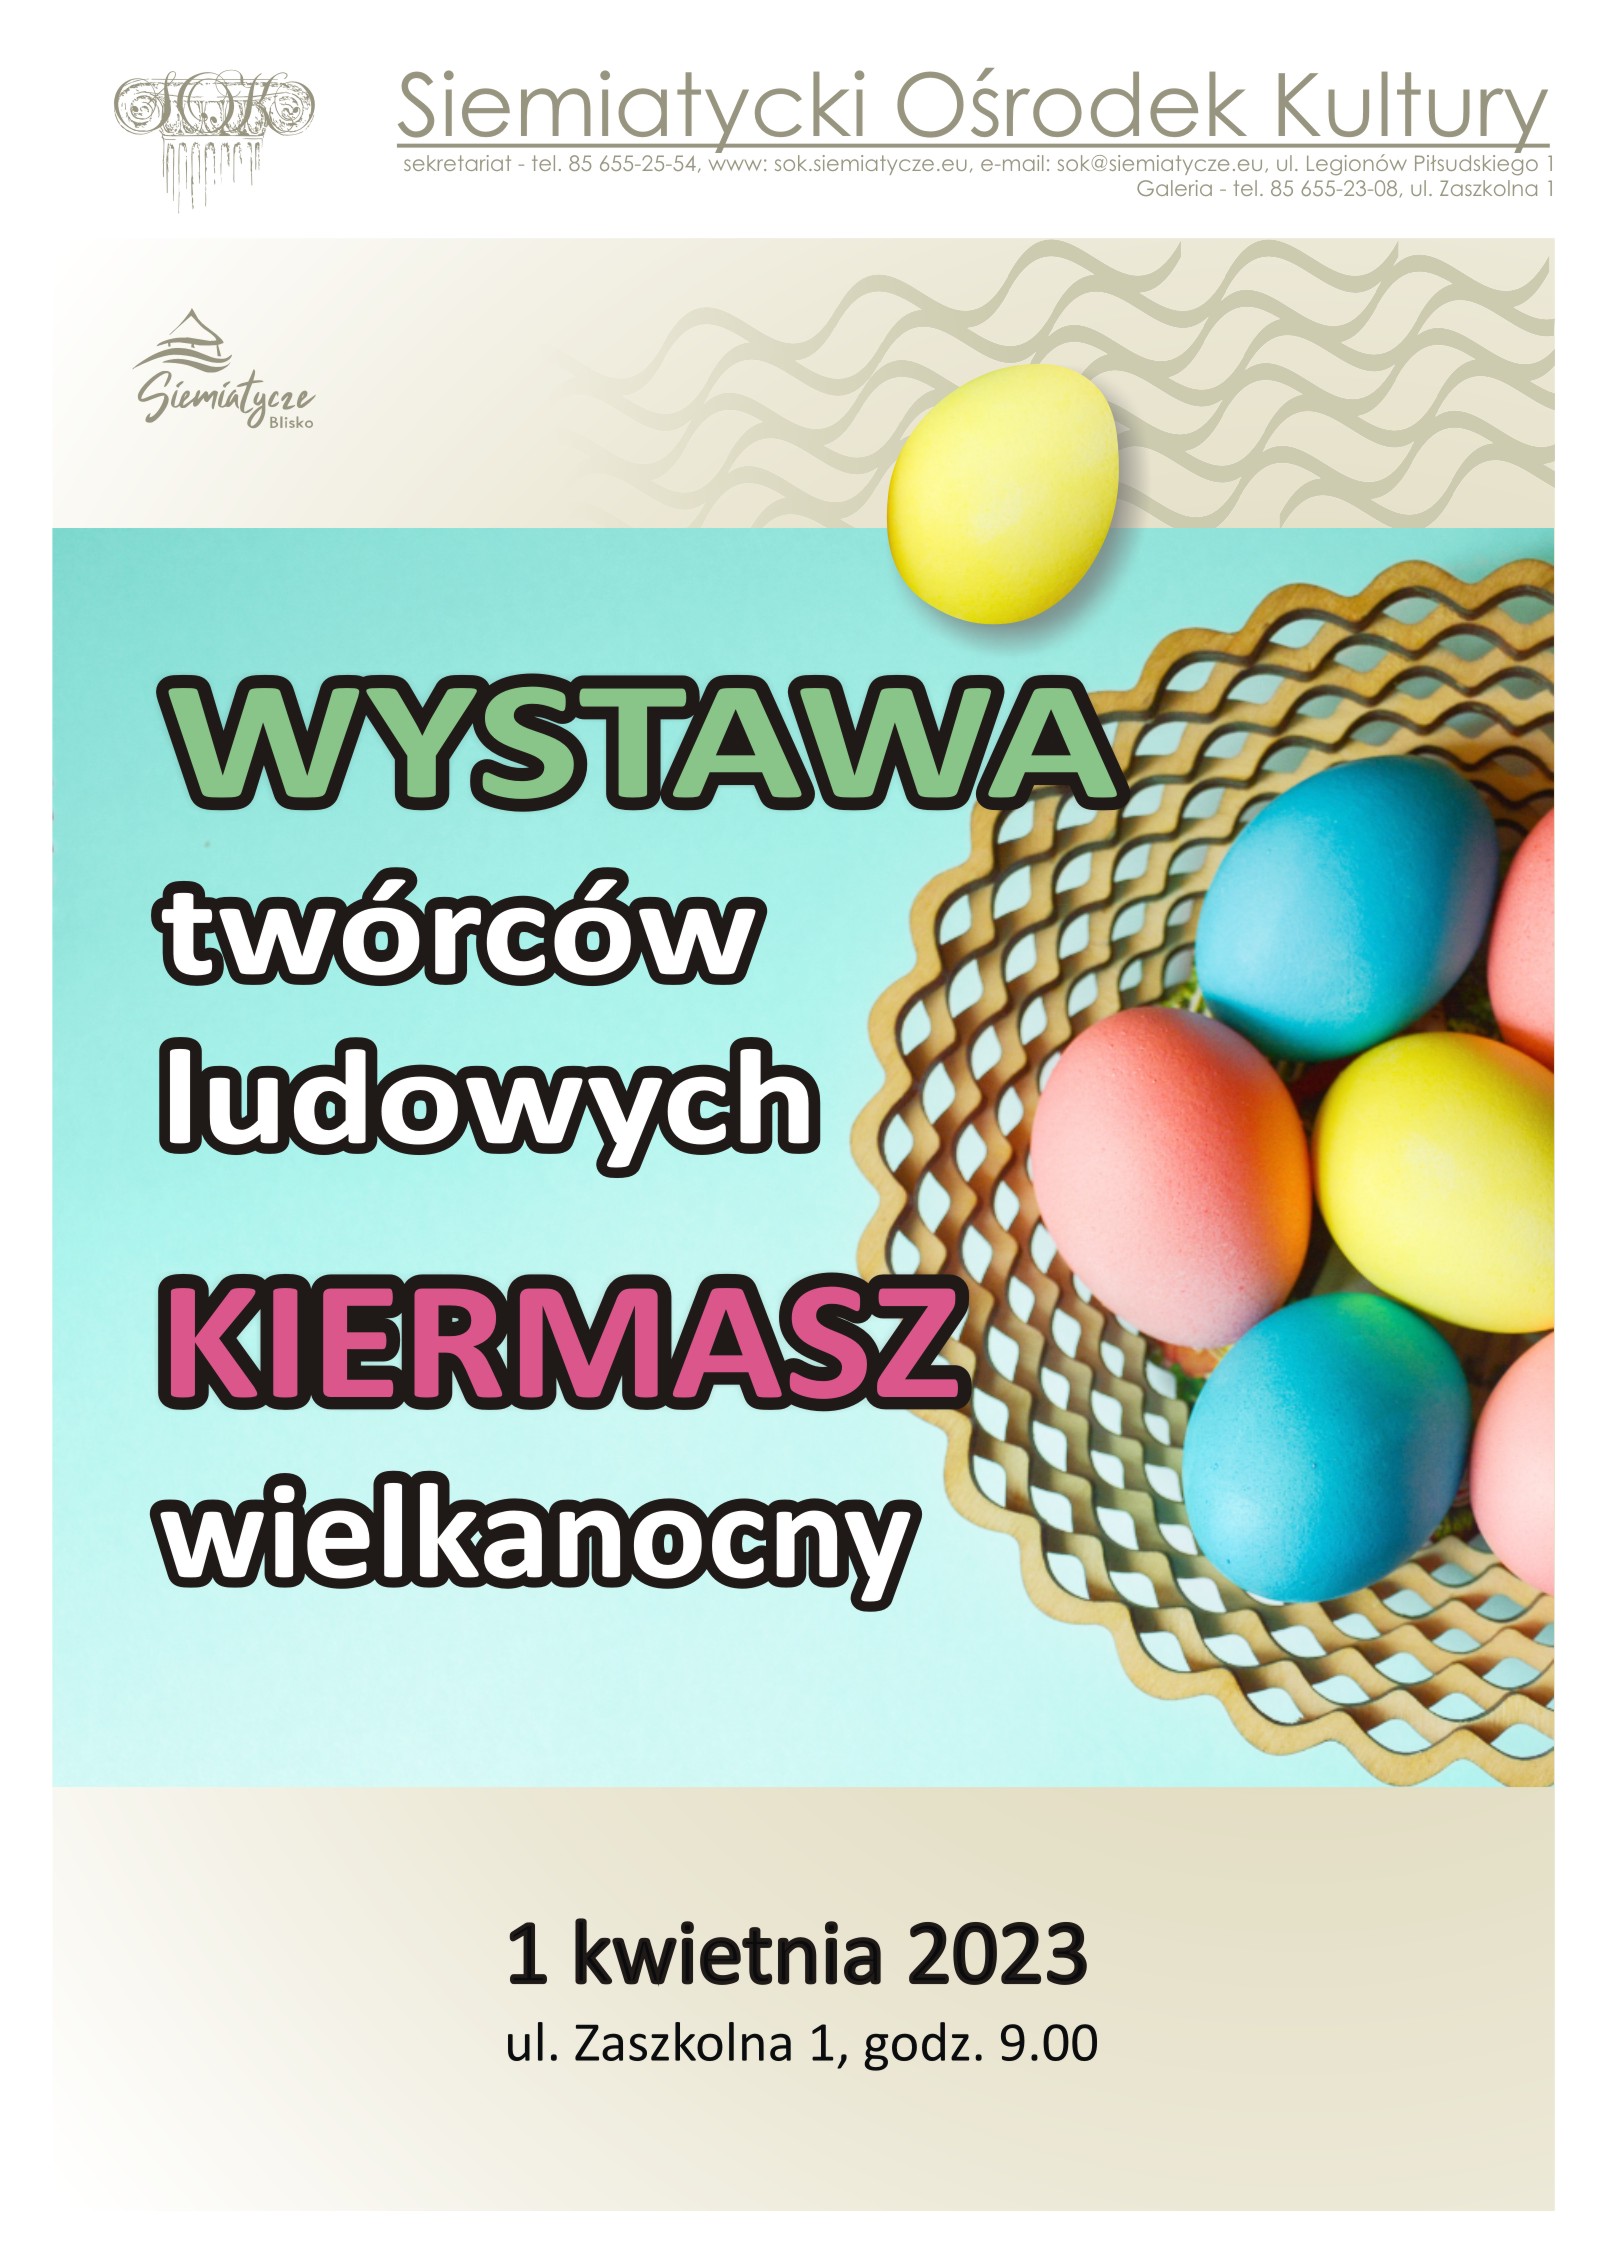 Grarfka z jajami wielkanocnymi w koszyku na błękitnym tle z tekstem Wielkanocny Kiermasz i Wystawa Twórców Ludowych 1 kwietnia 2023 r.